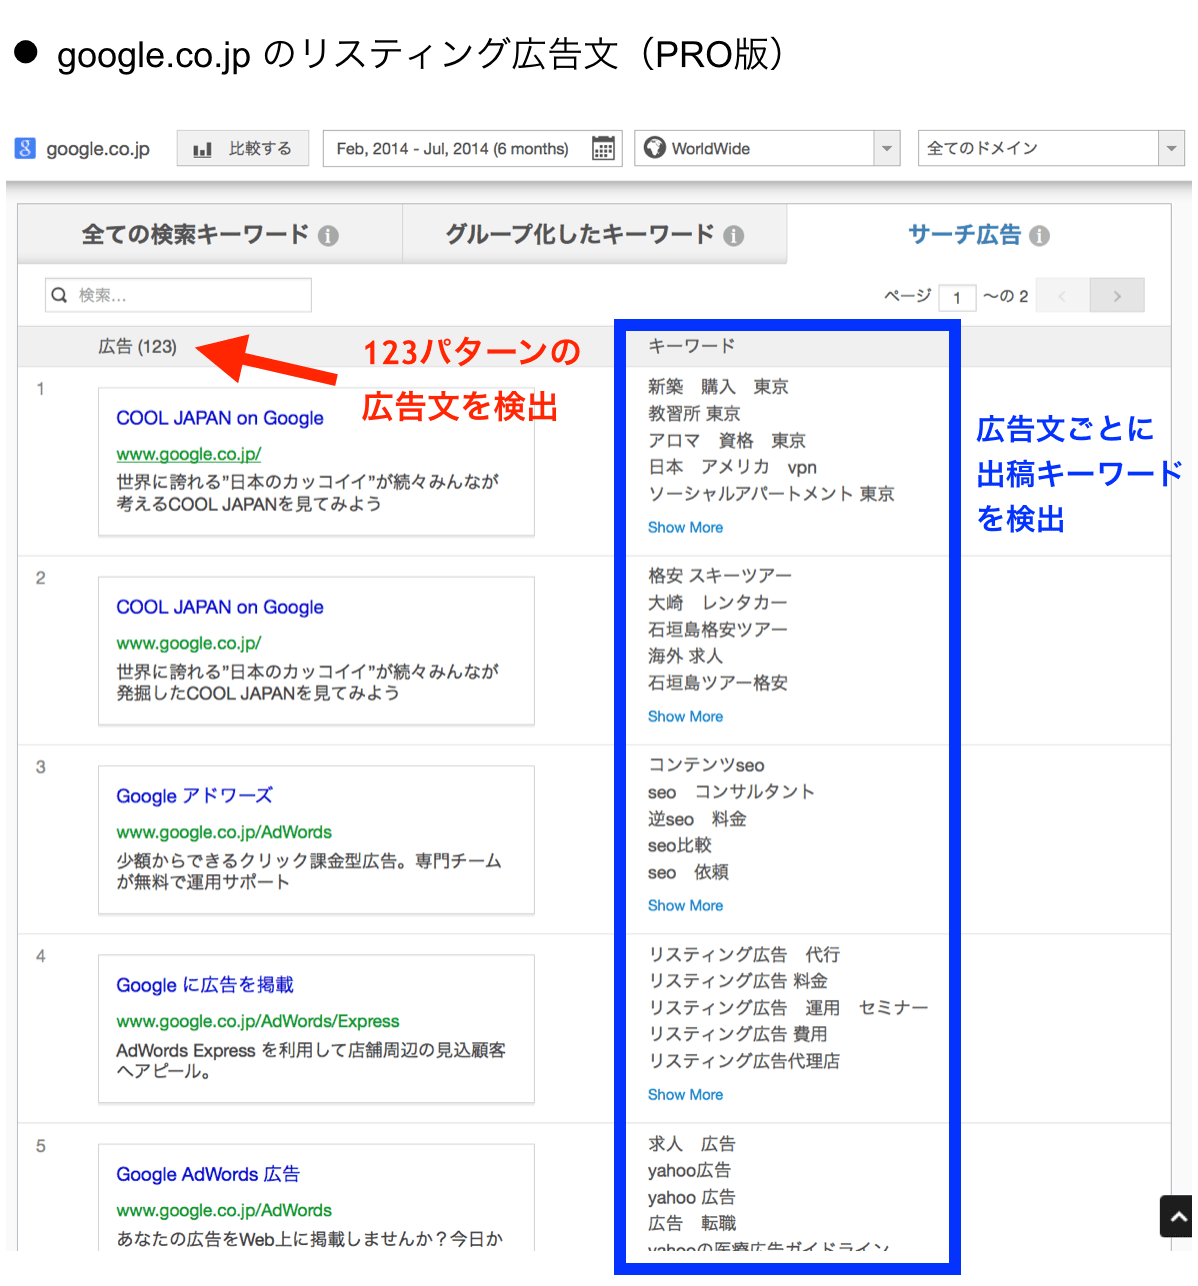 google.co.jp のリスティング広告文（PRO版）